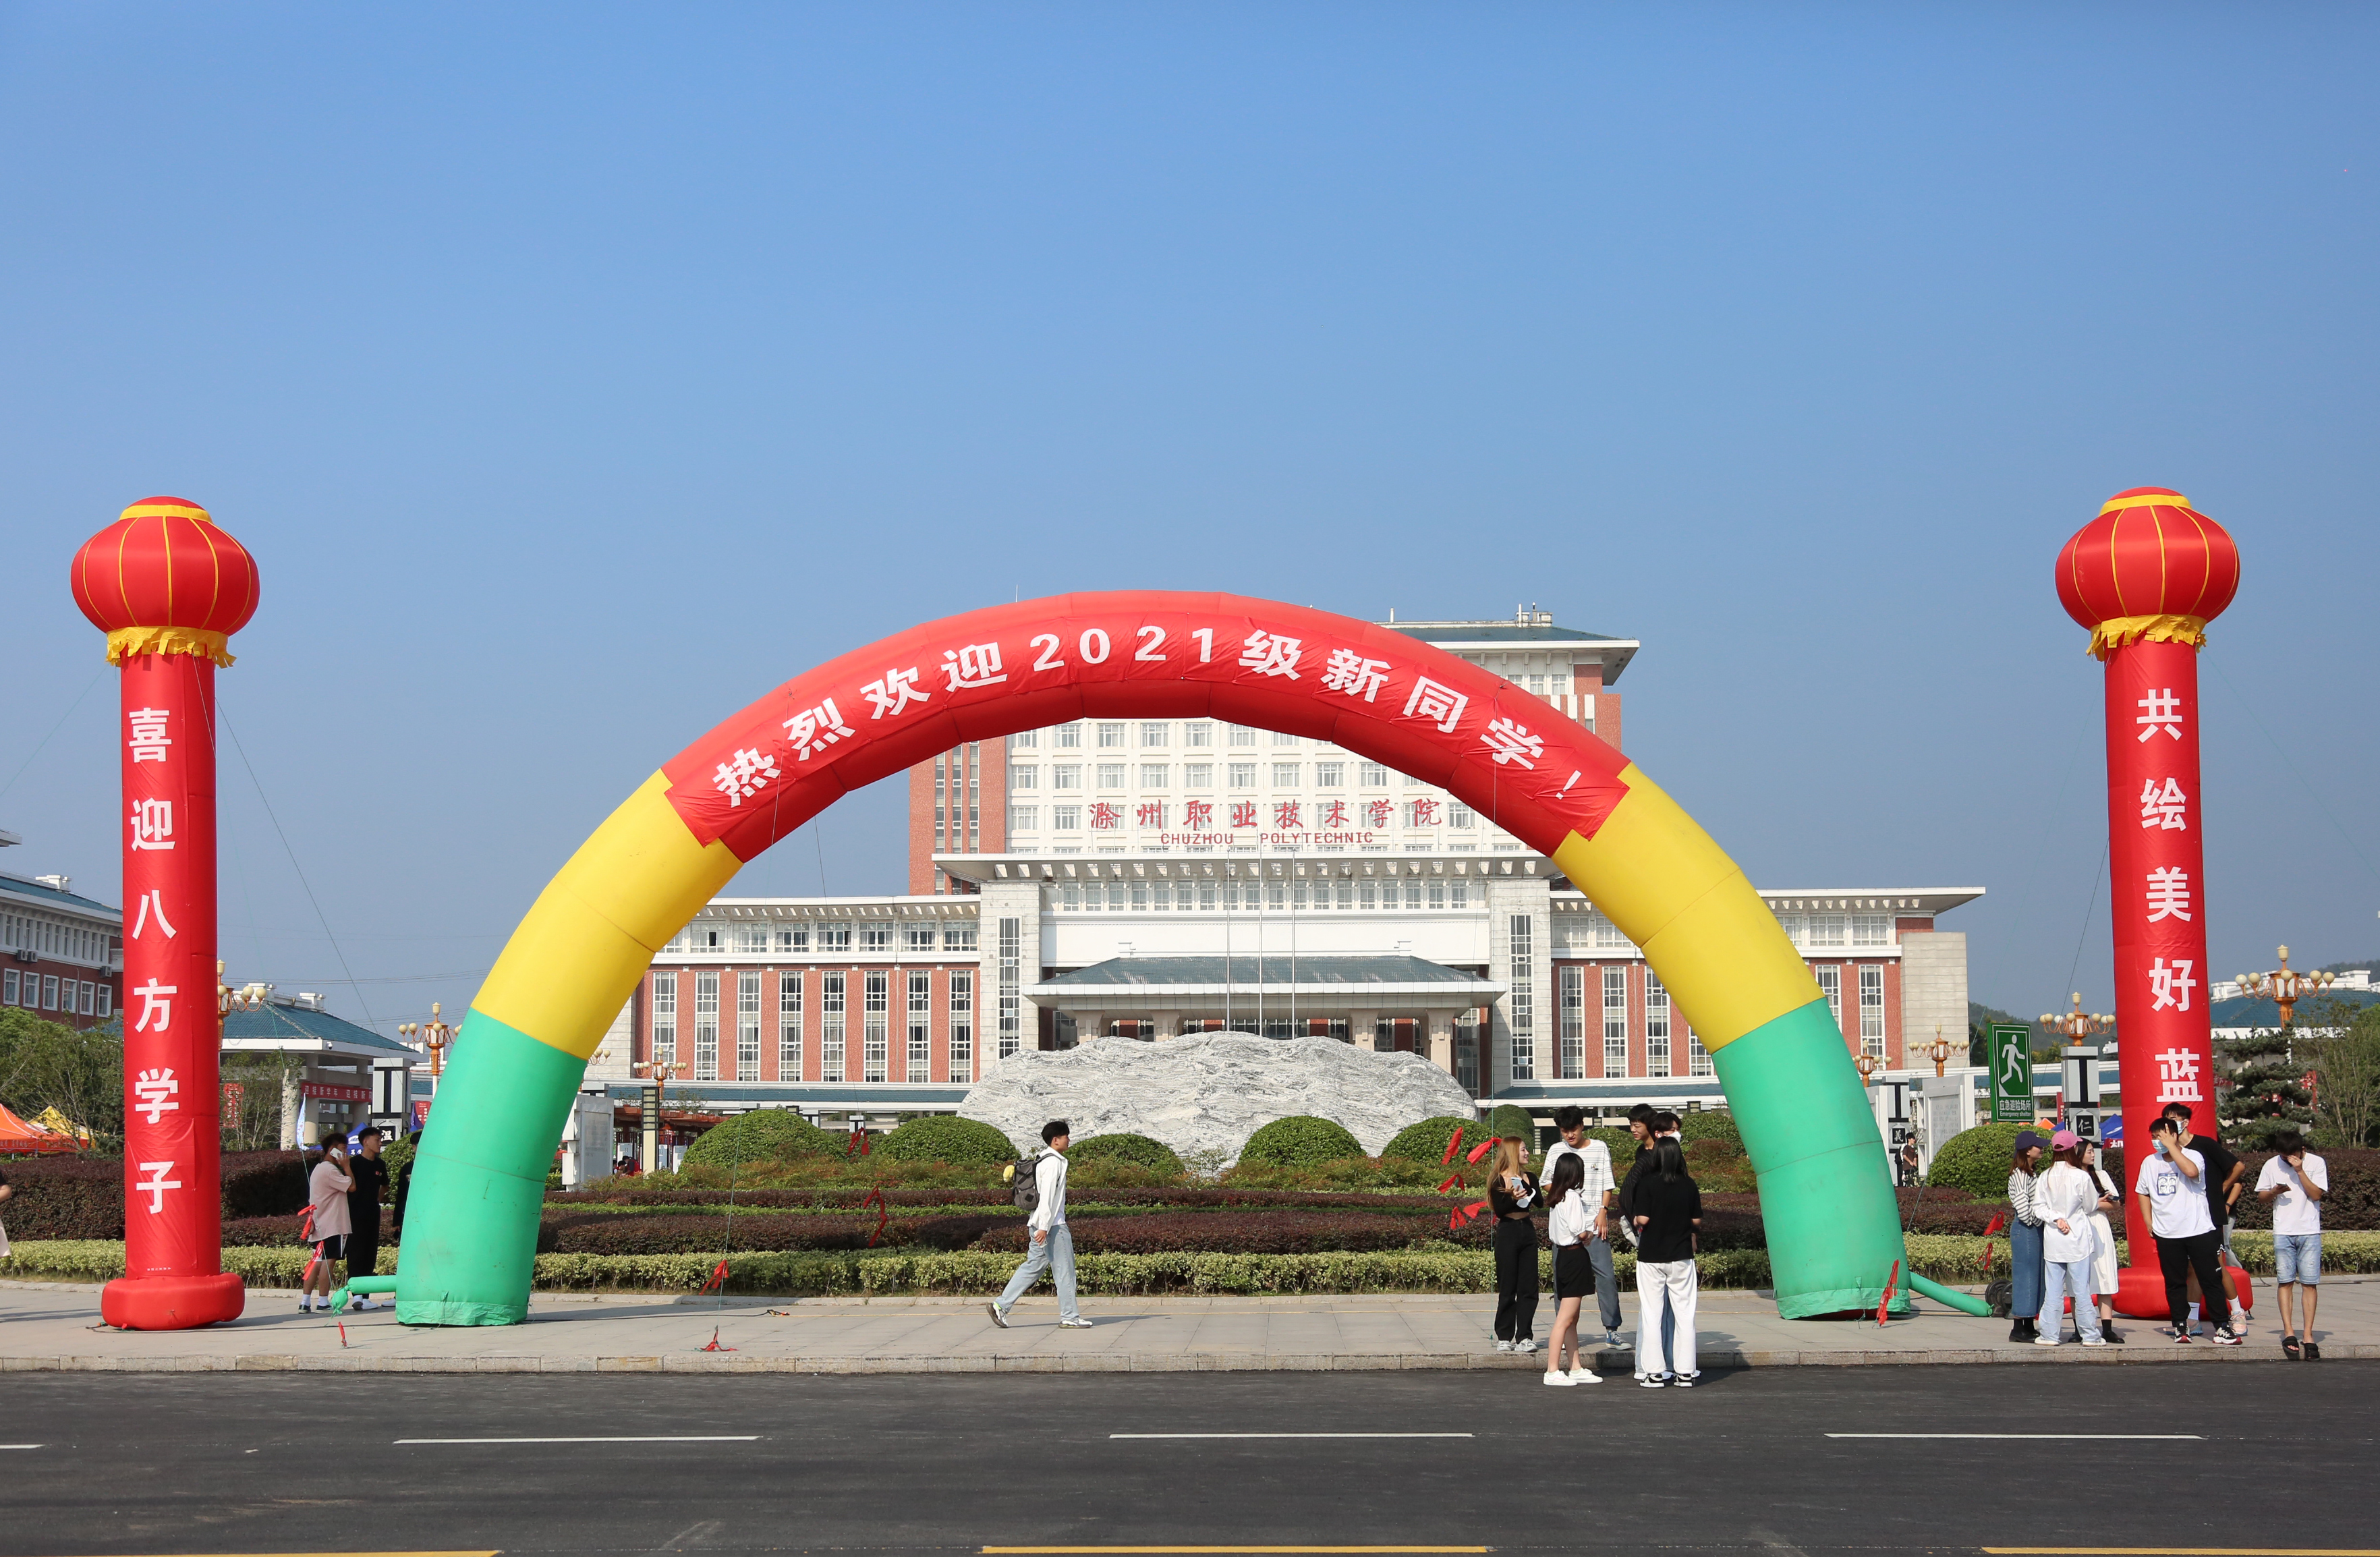 满新欢喜等到你 滁州职业技术学院喜迎2021级新生报到